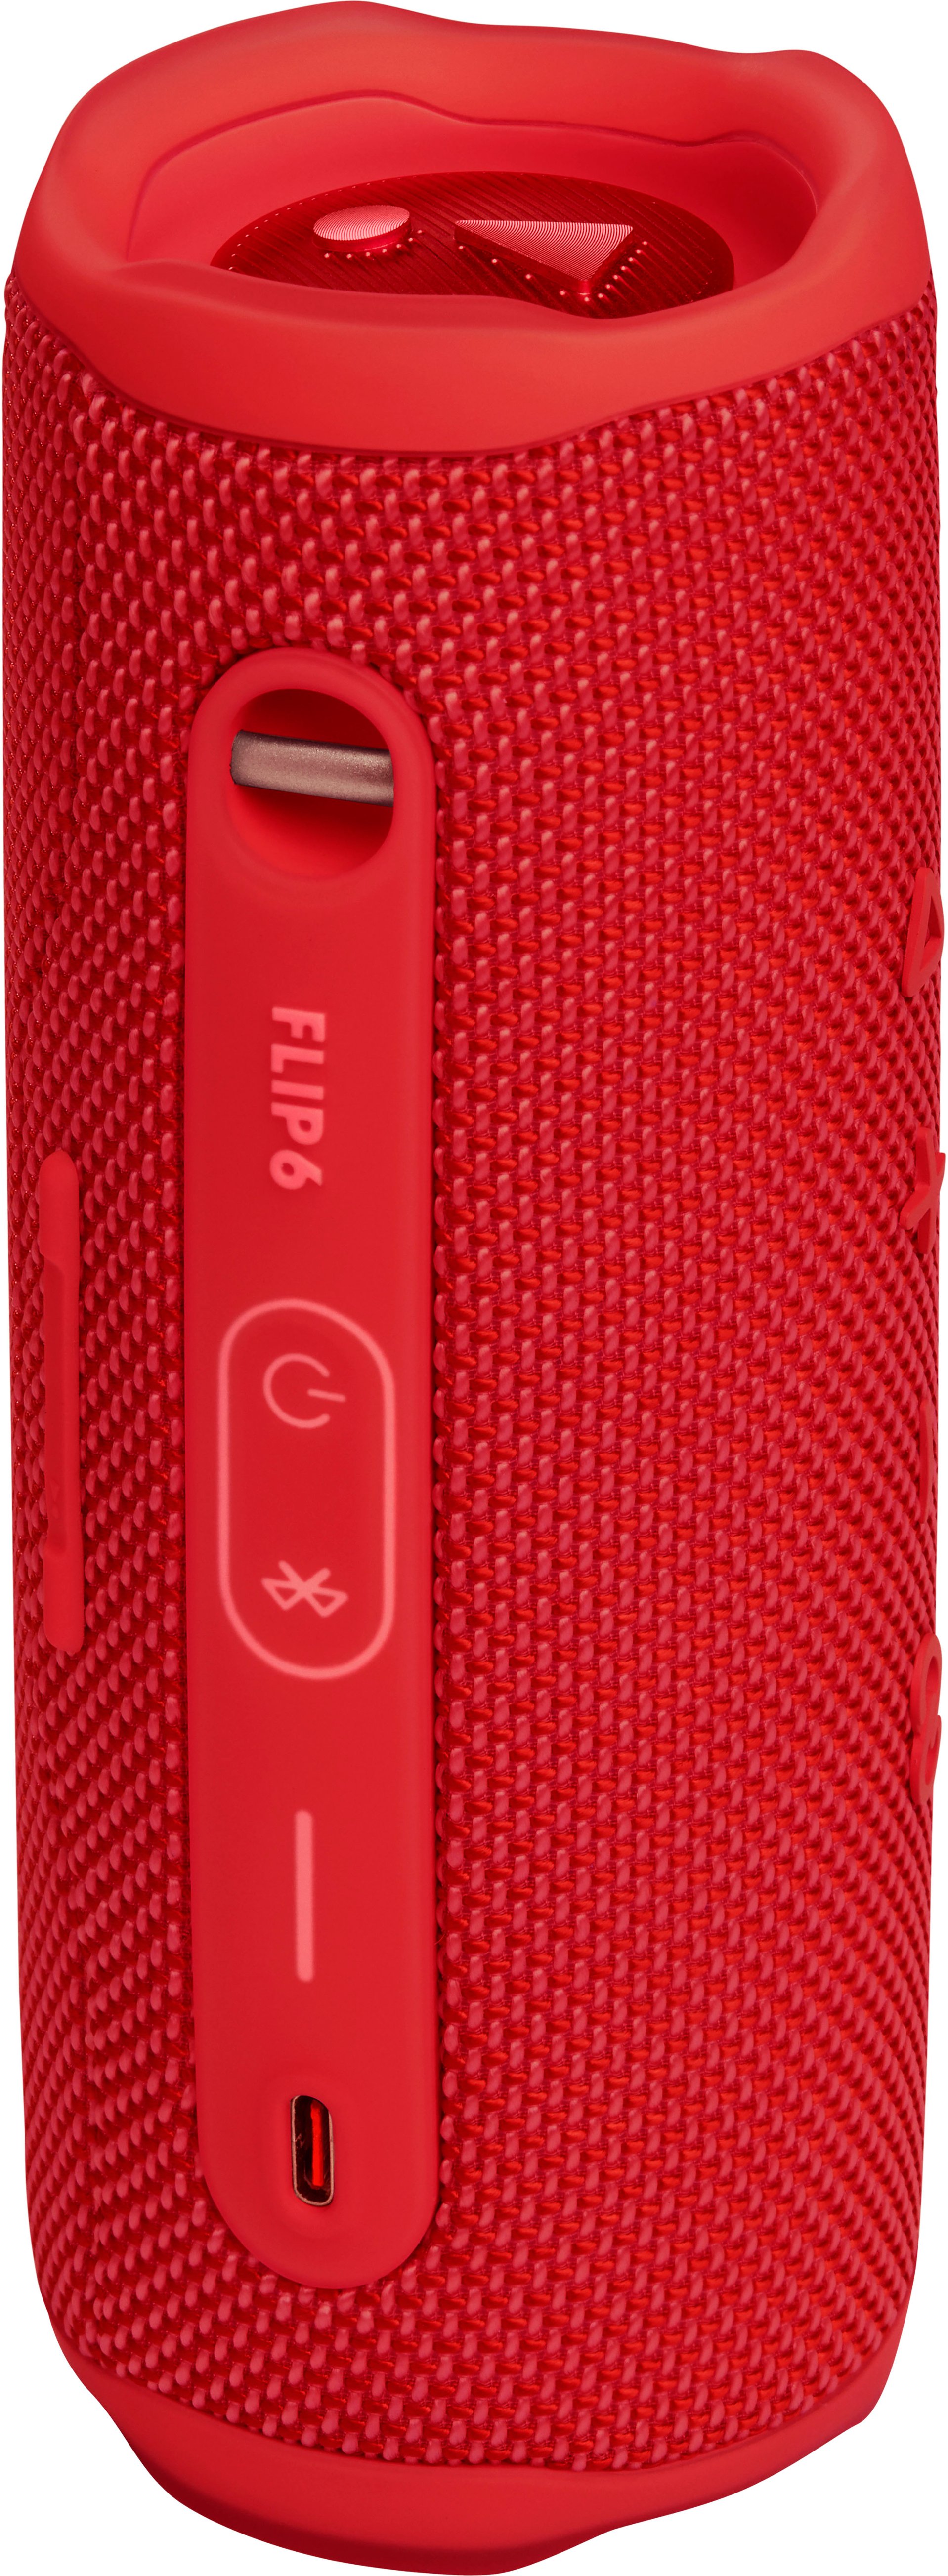 Waterproof JBL Best Buy Portable - JBLFLIP6REDAM Speaker FLIP6 Red